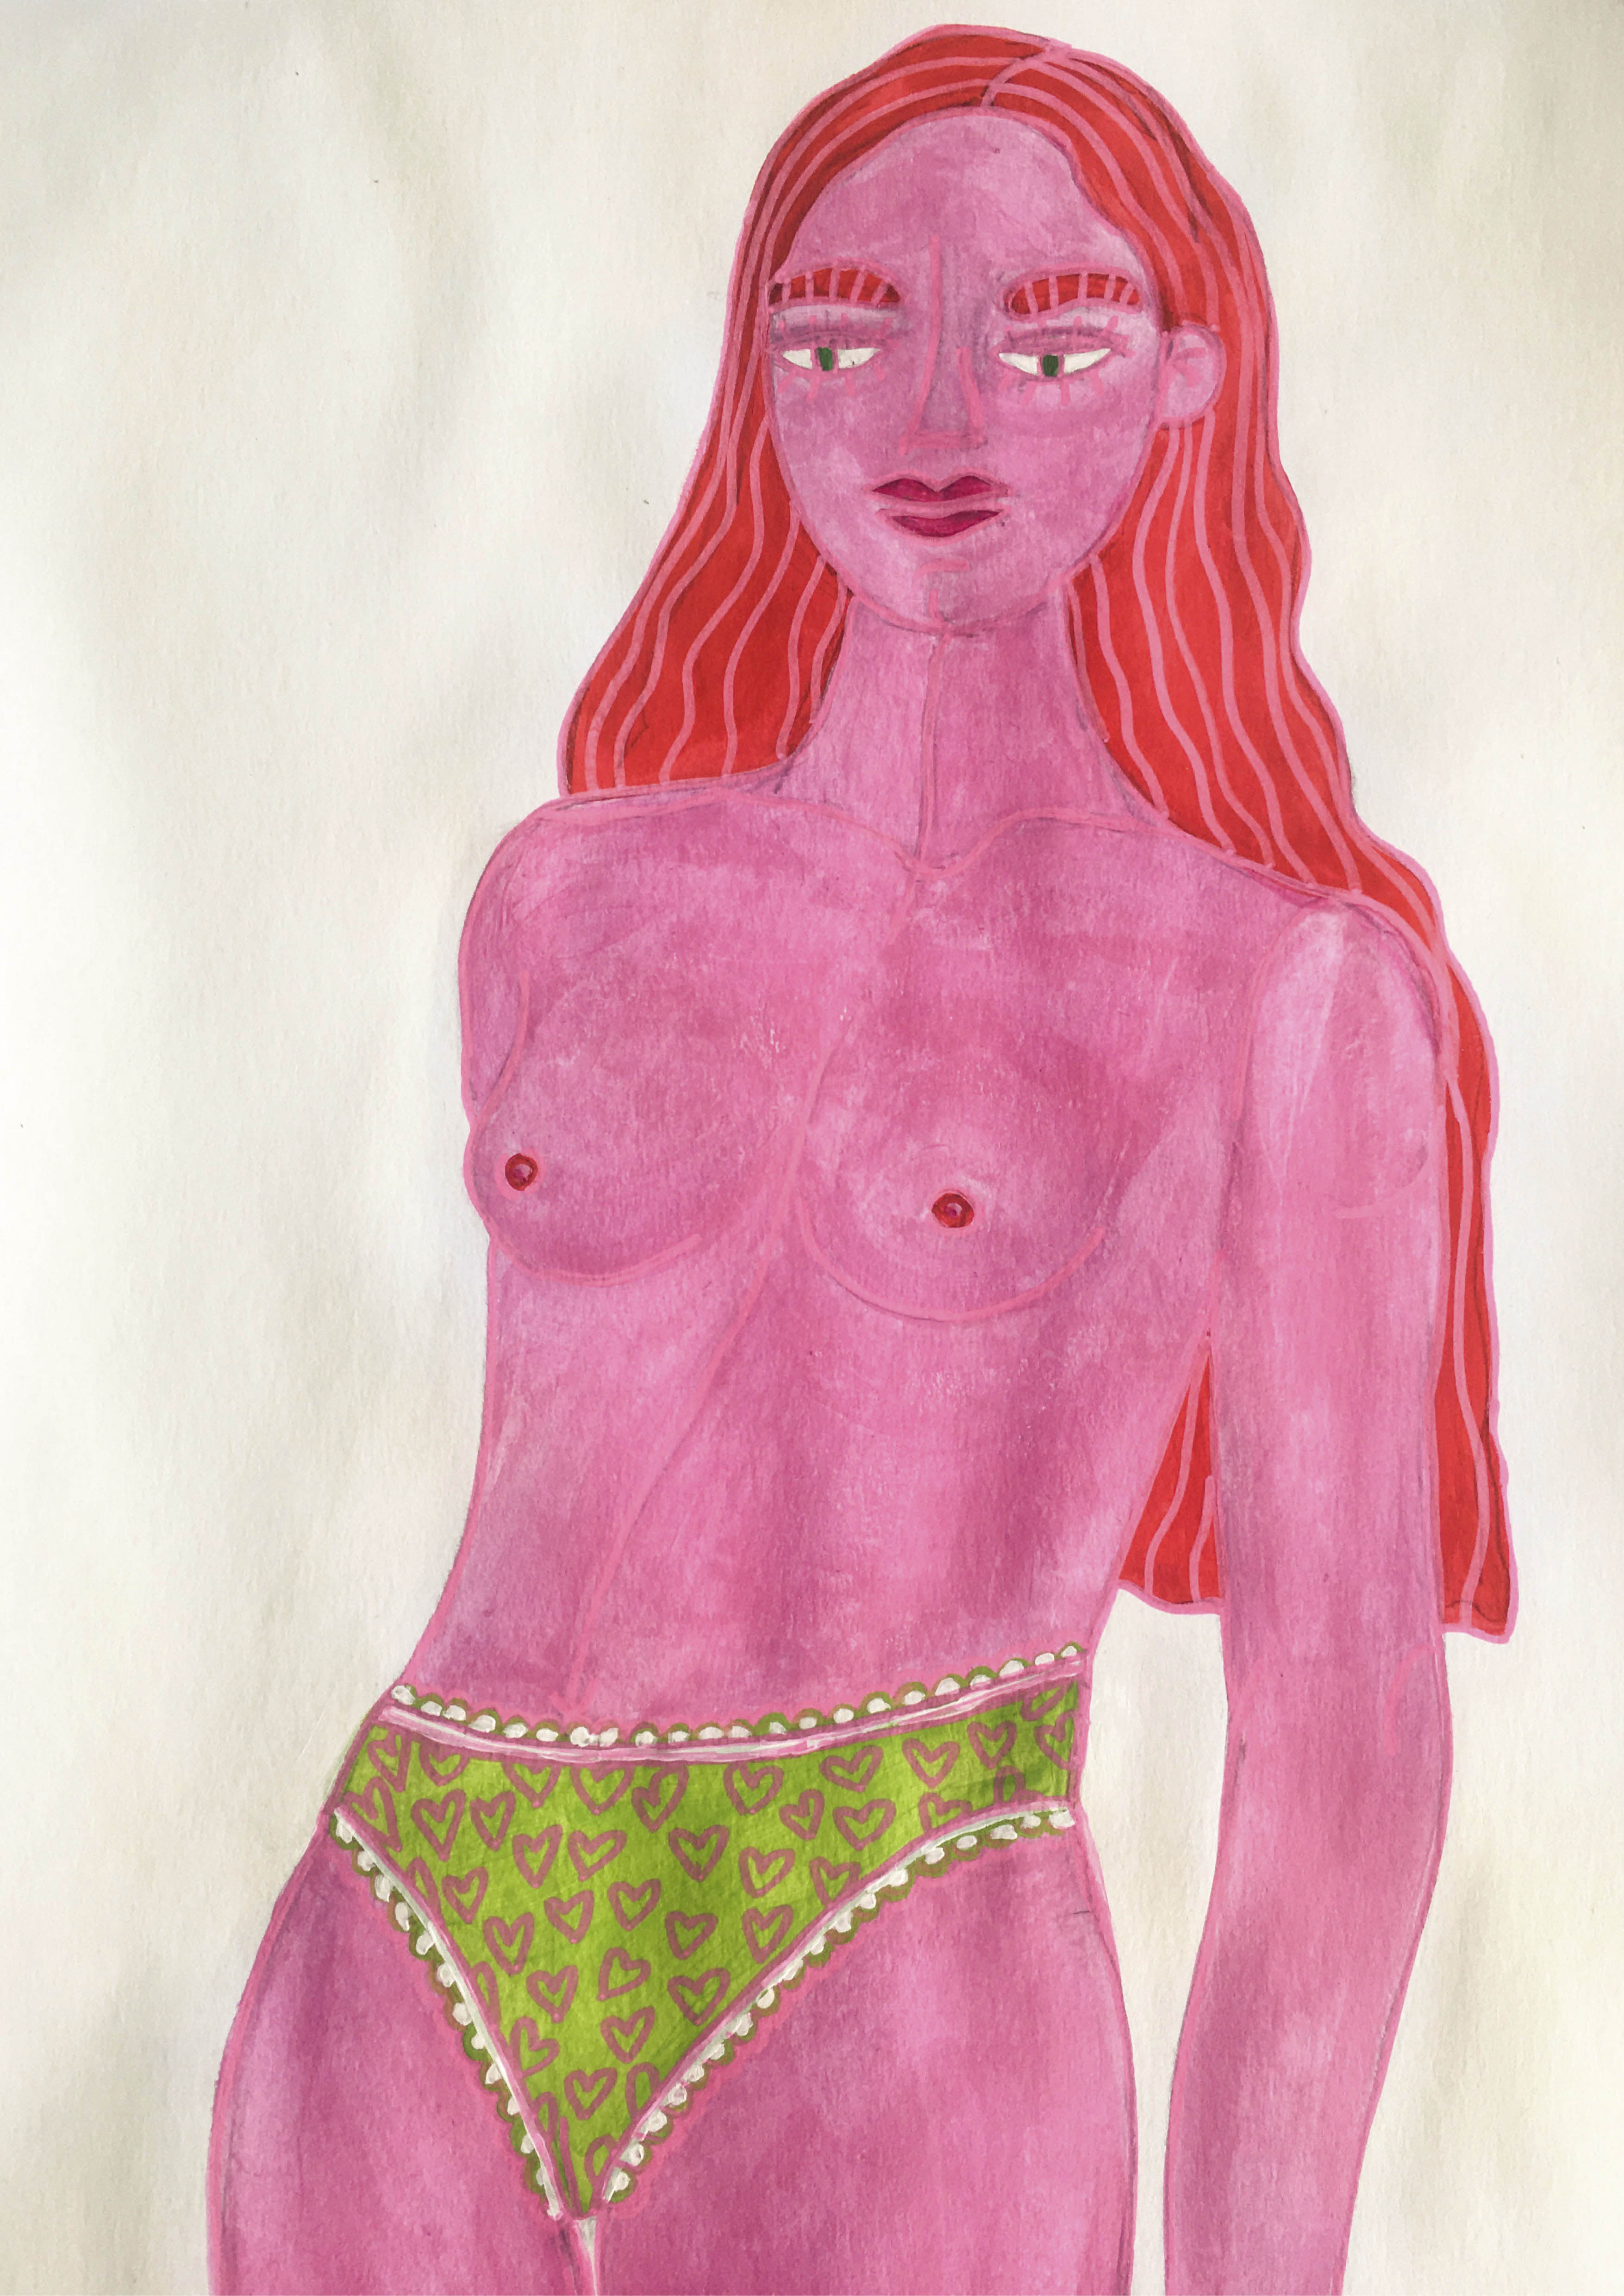 Donna nuda annoiata: illustrazione di Giada Maestra